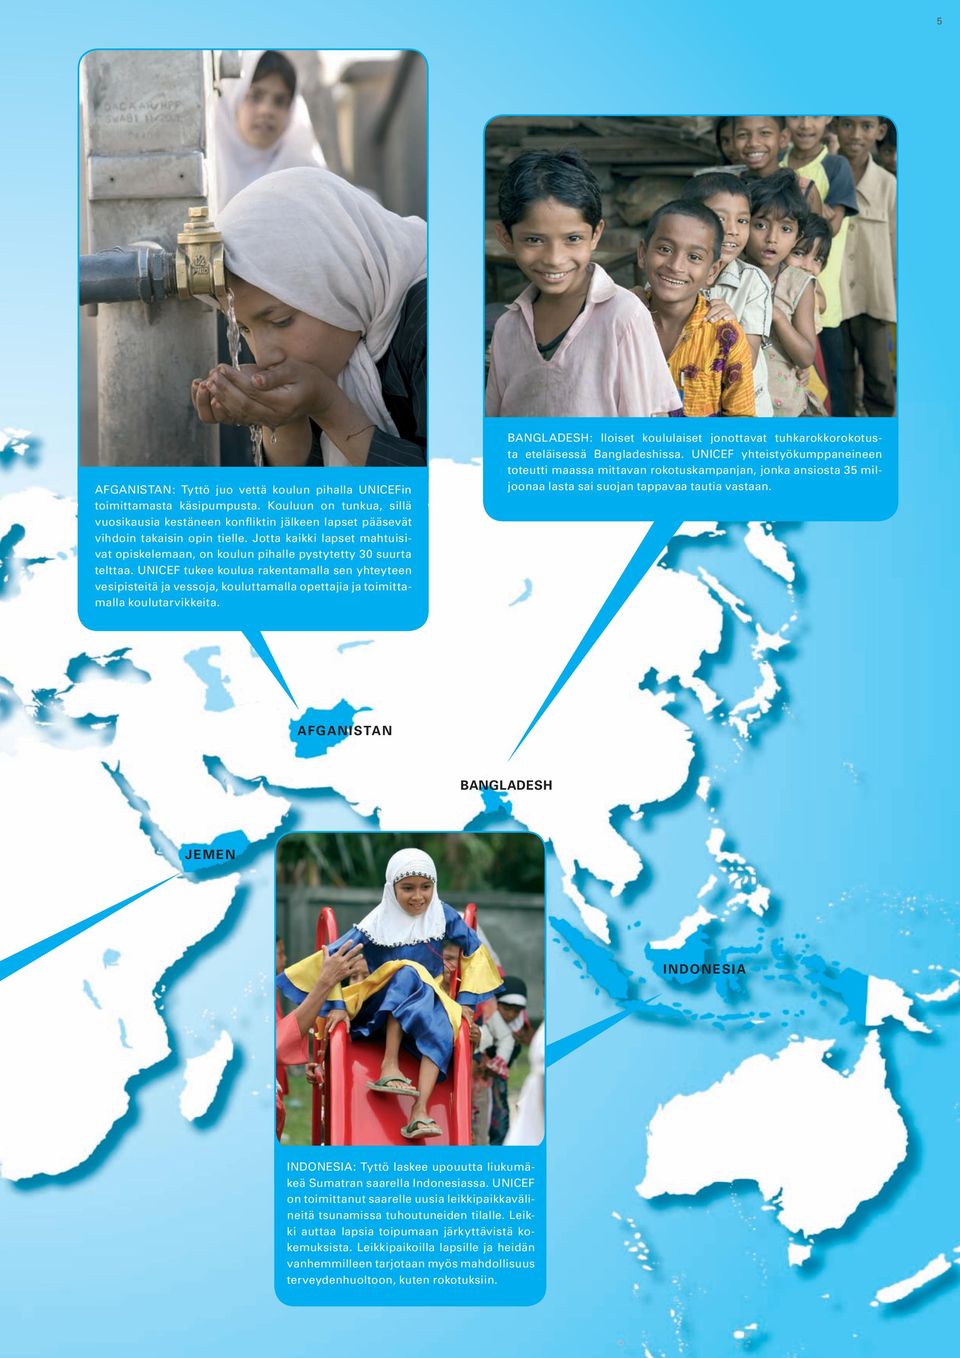 UNICEF tukee koulua rakentamalla sen yhteyteen vesipisteitä ja vessoja, kouluttamalla opettajia ja toimittamalla koulutarvikkeita.